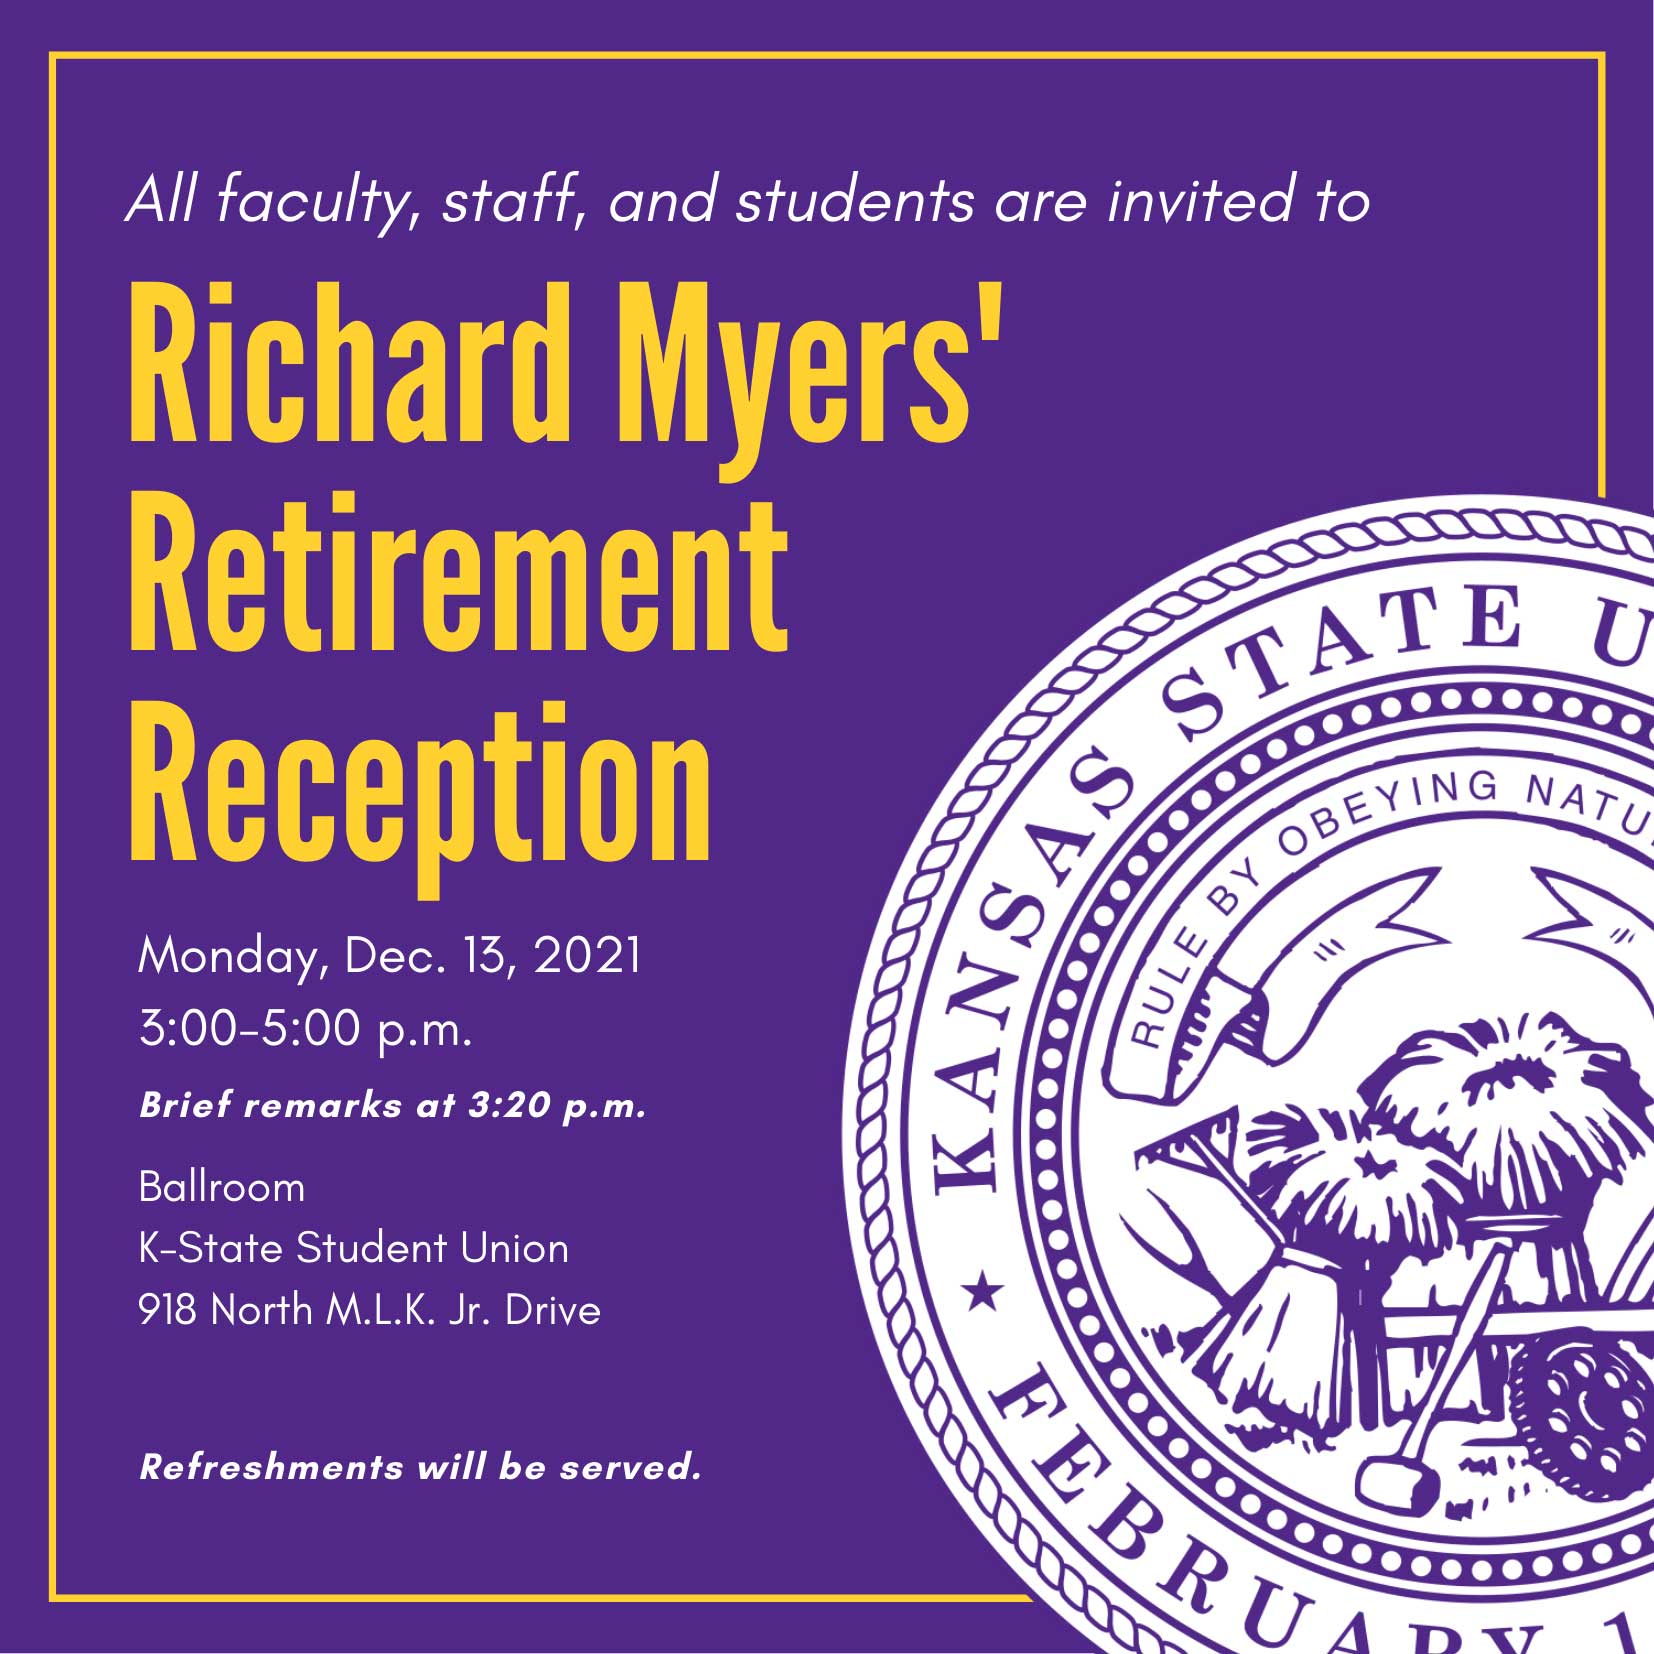 Retirement reception invitation